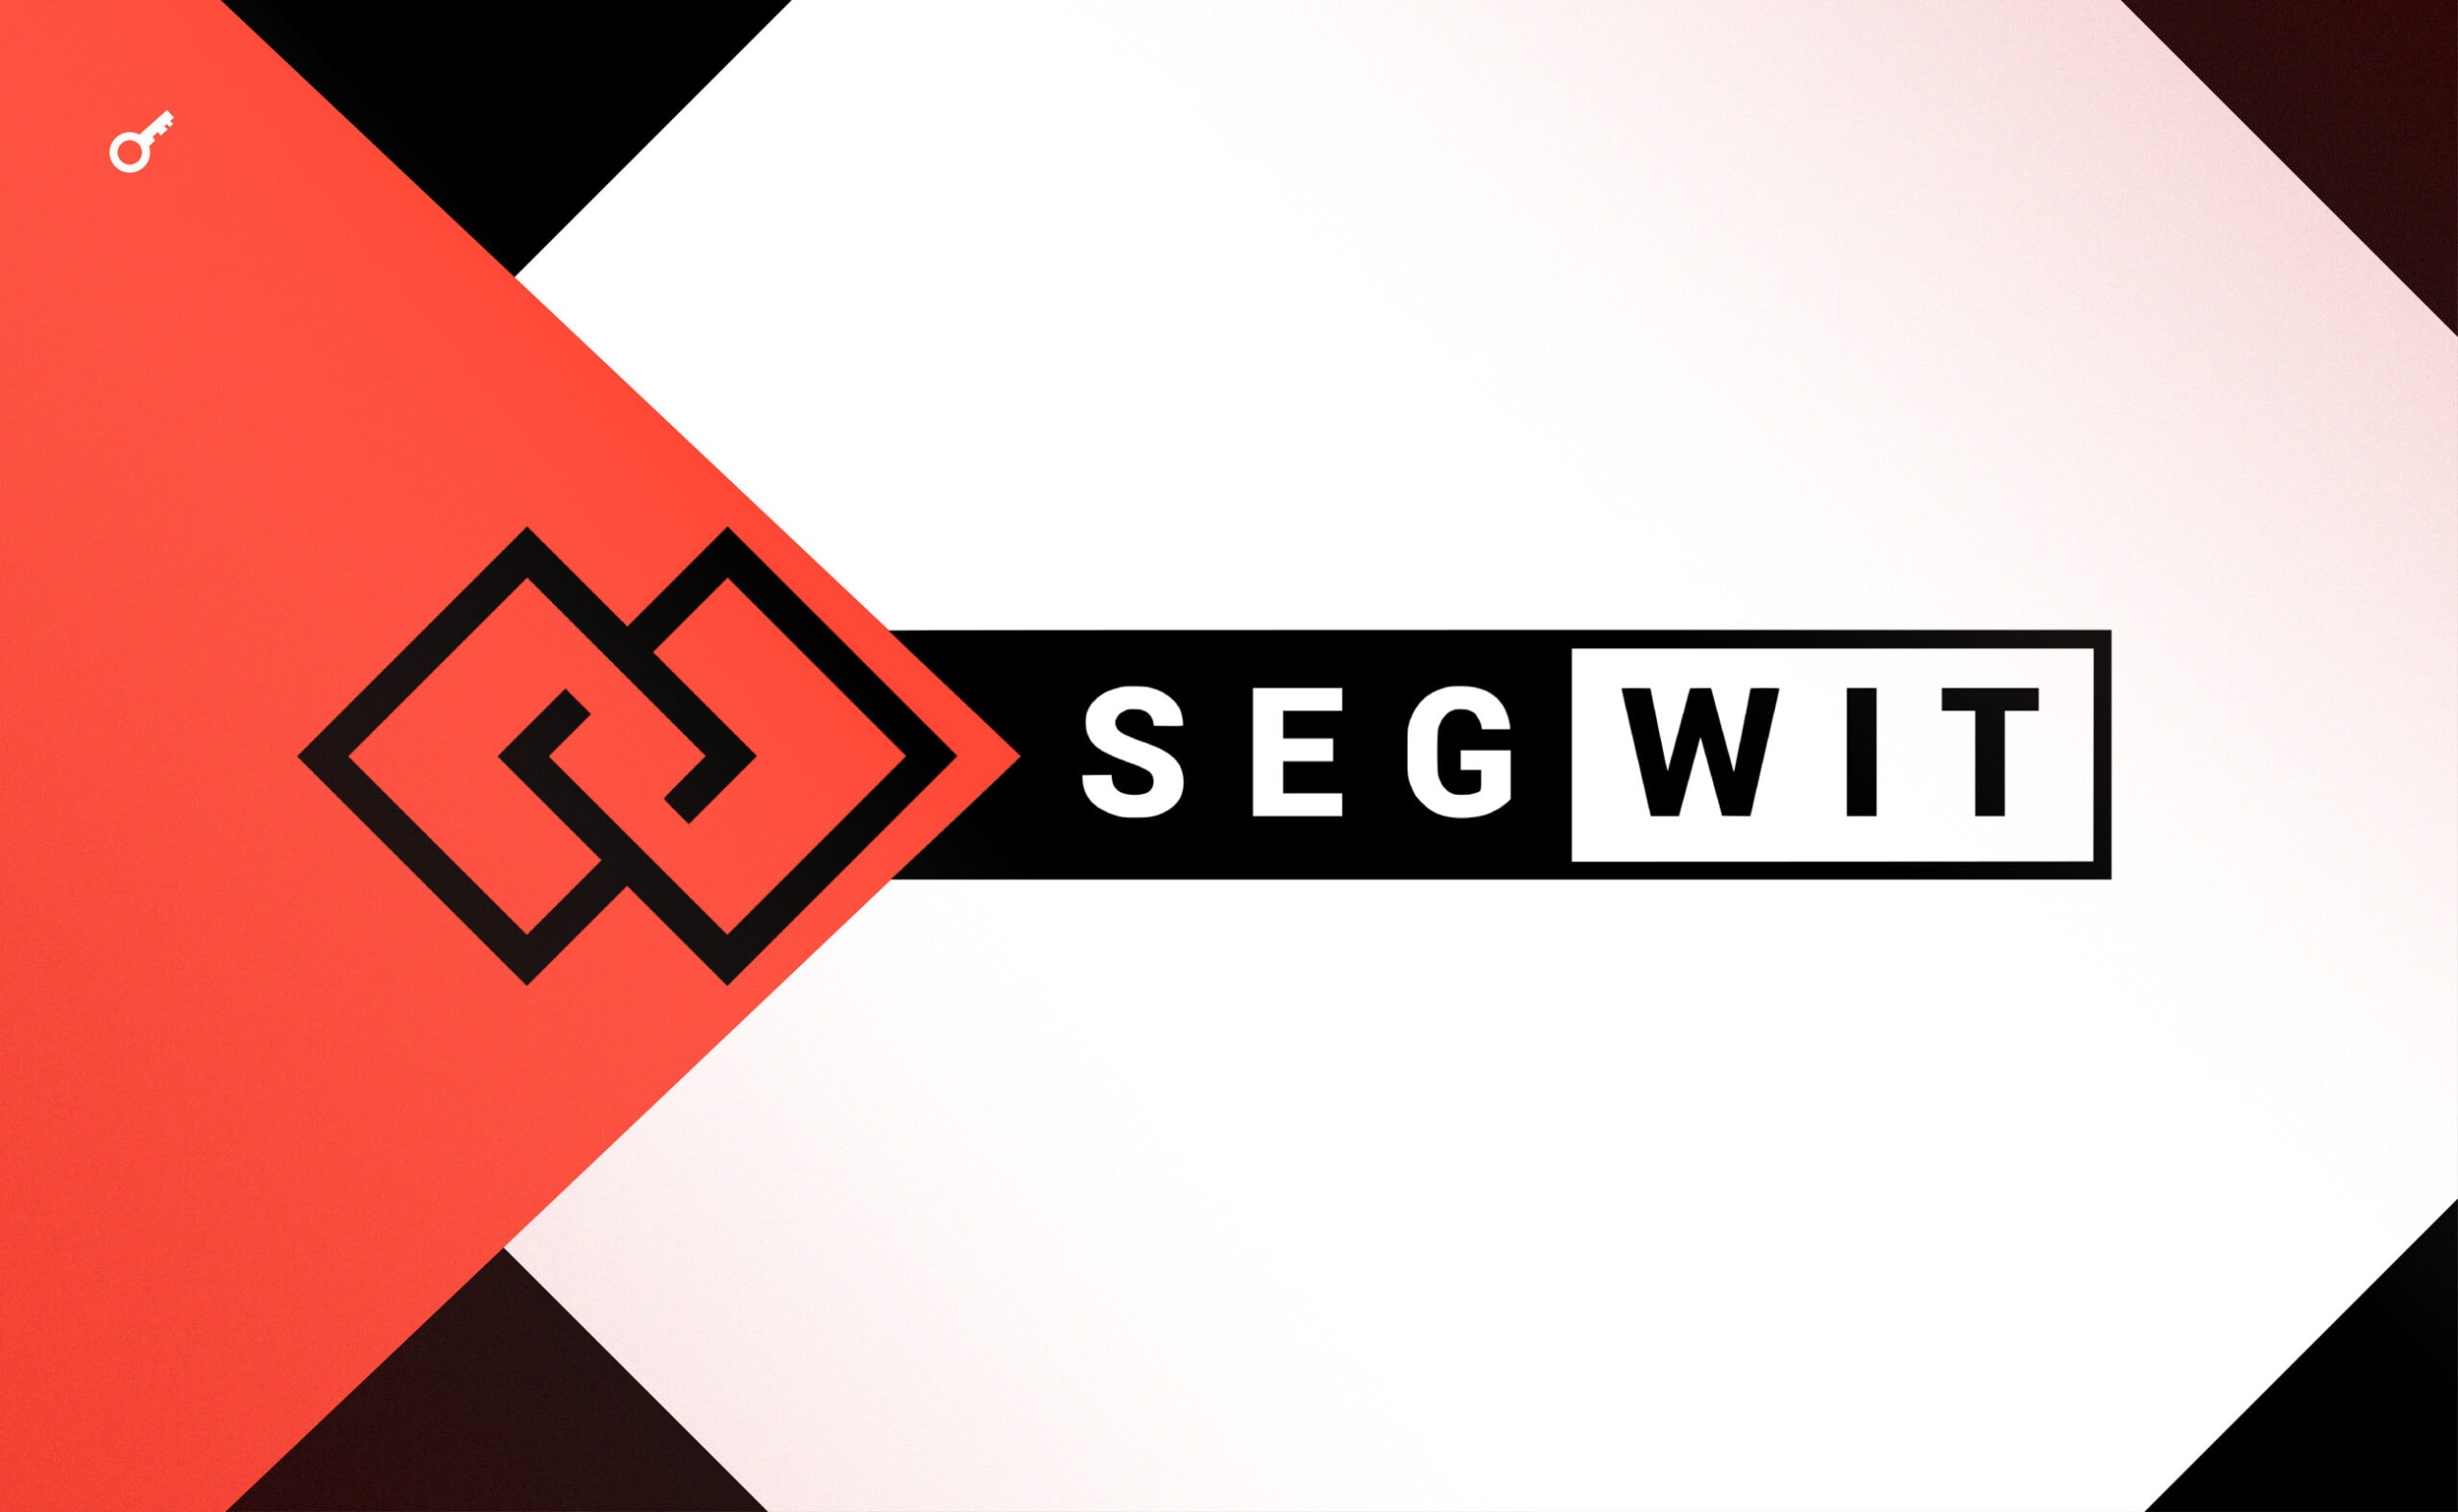 Технология Segregated Witness (SegWit). Полный обзор с разбором как это все работает. Заглавный коллаж статьи.